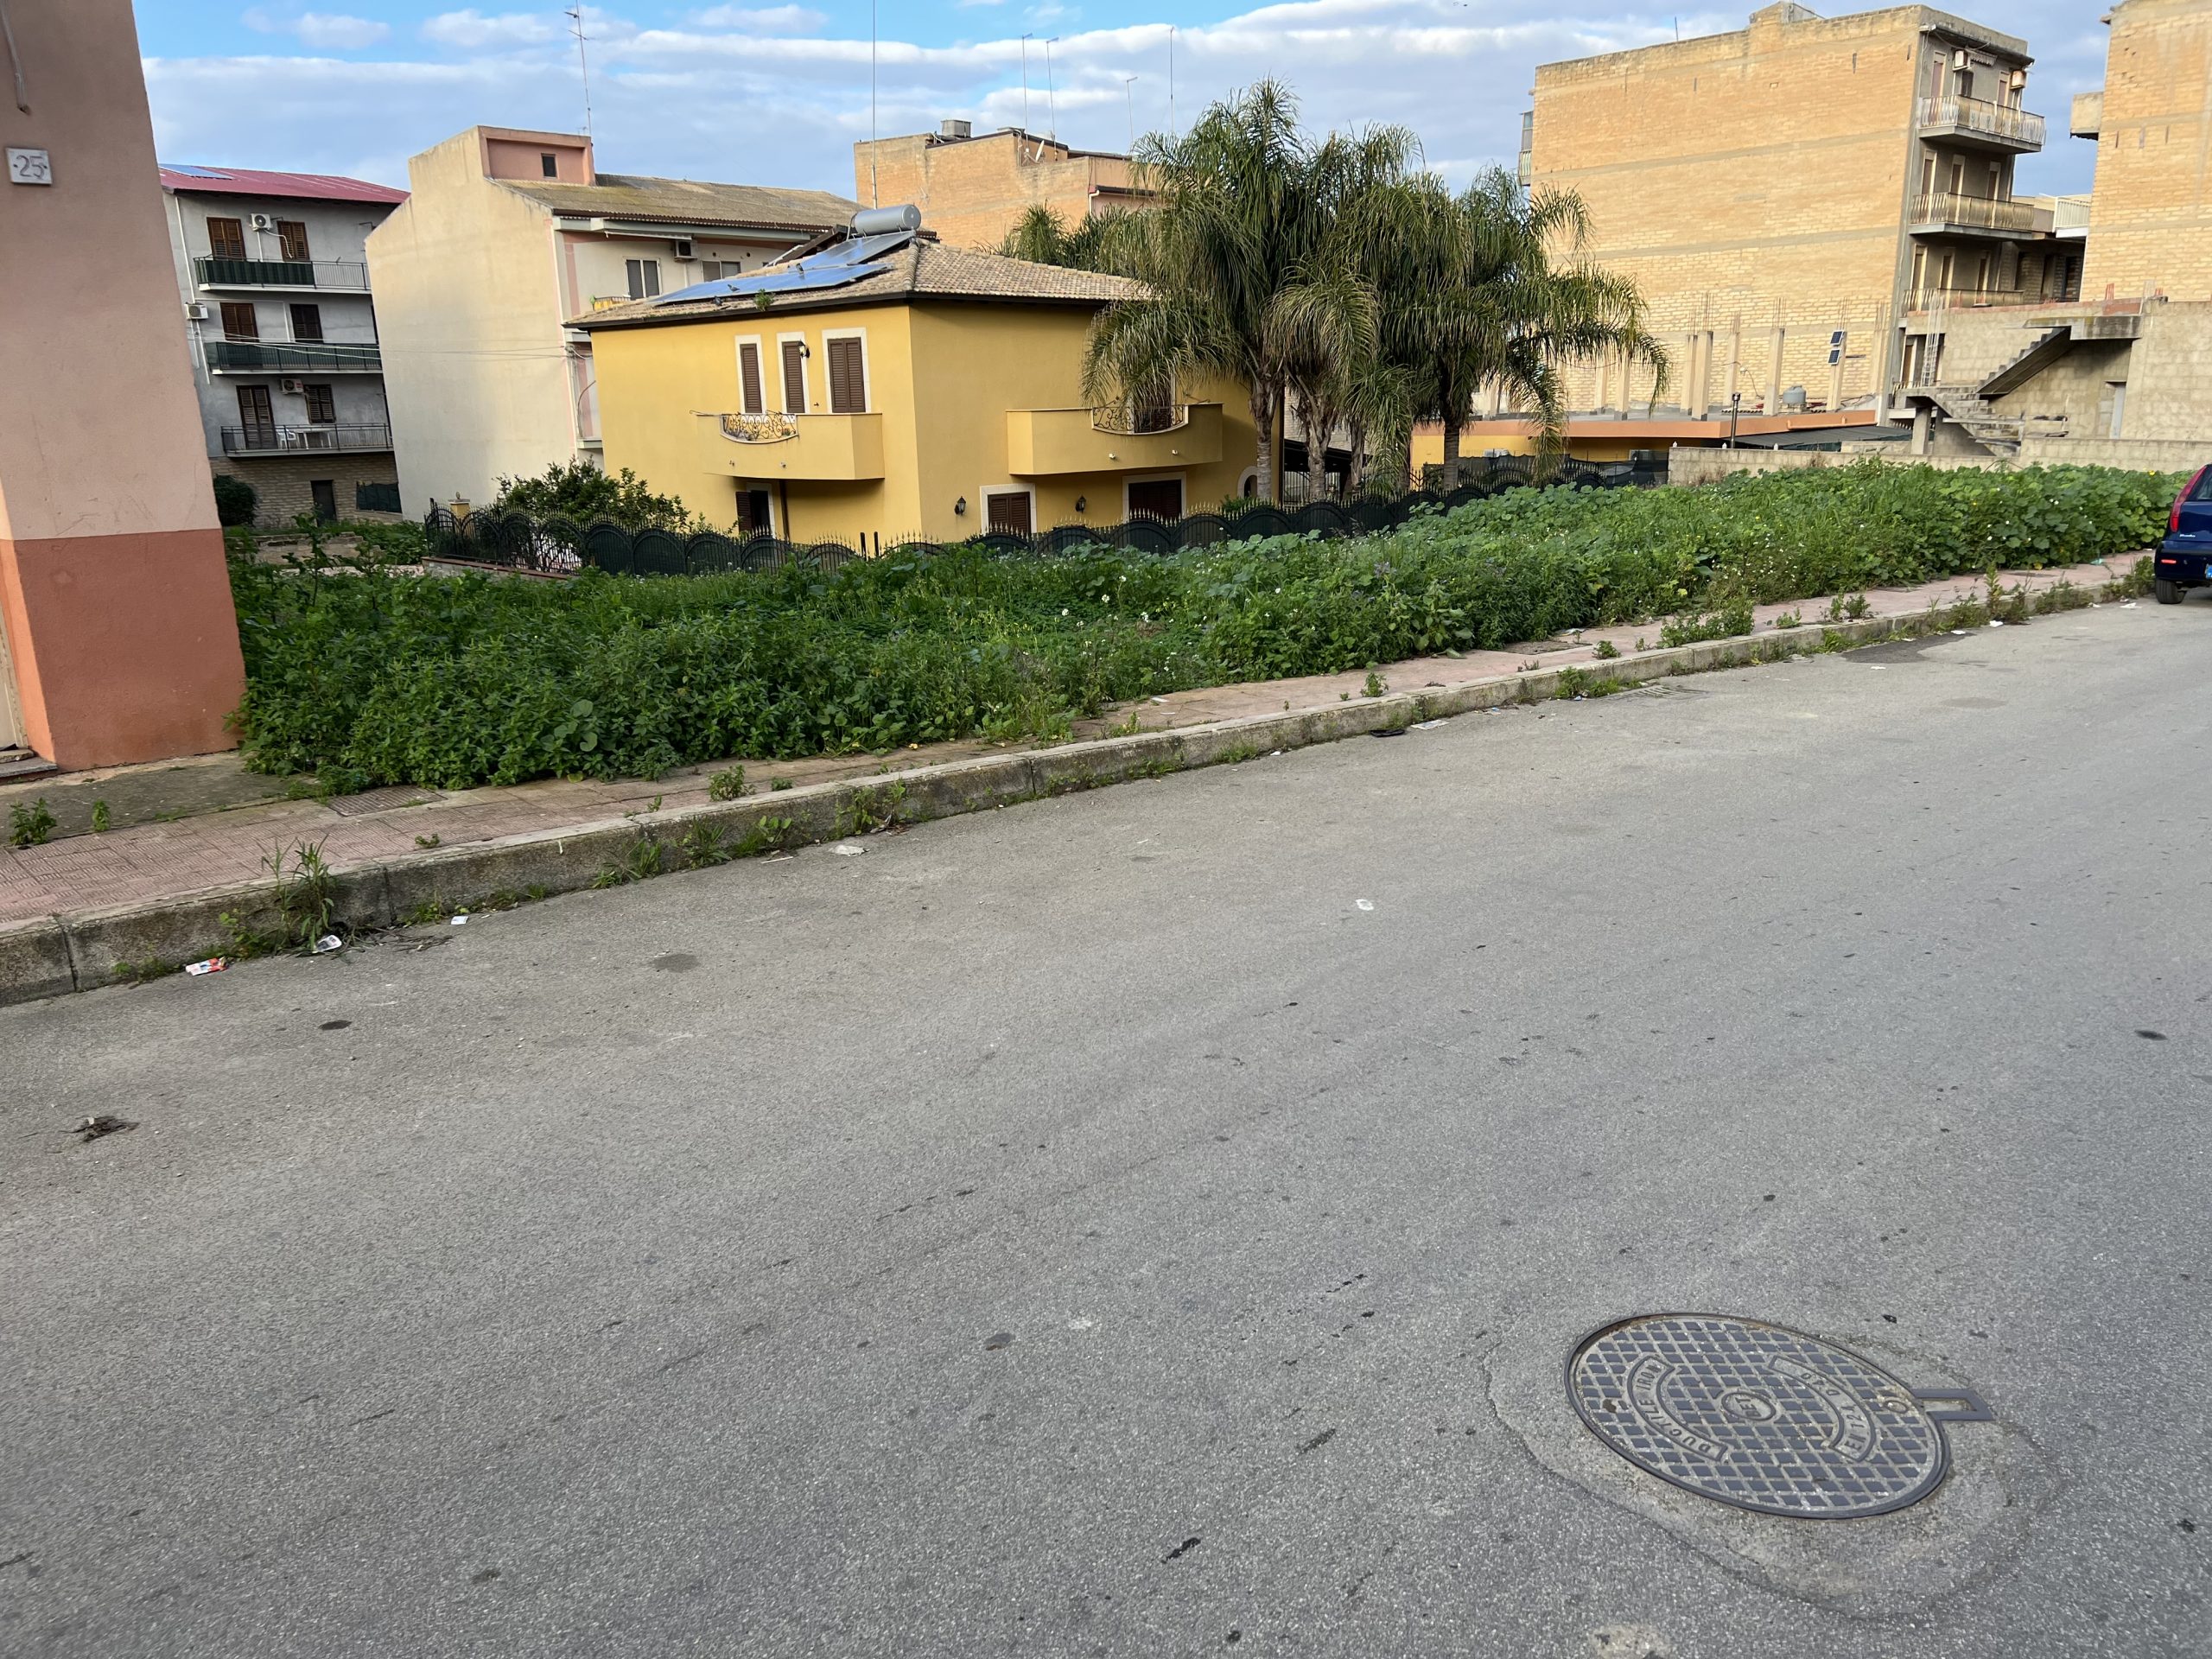 Lotto di terreno edificabile in zona B3 in via Ruffo di Calabria.